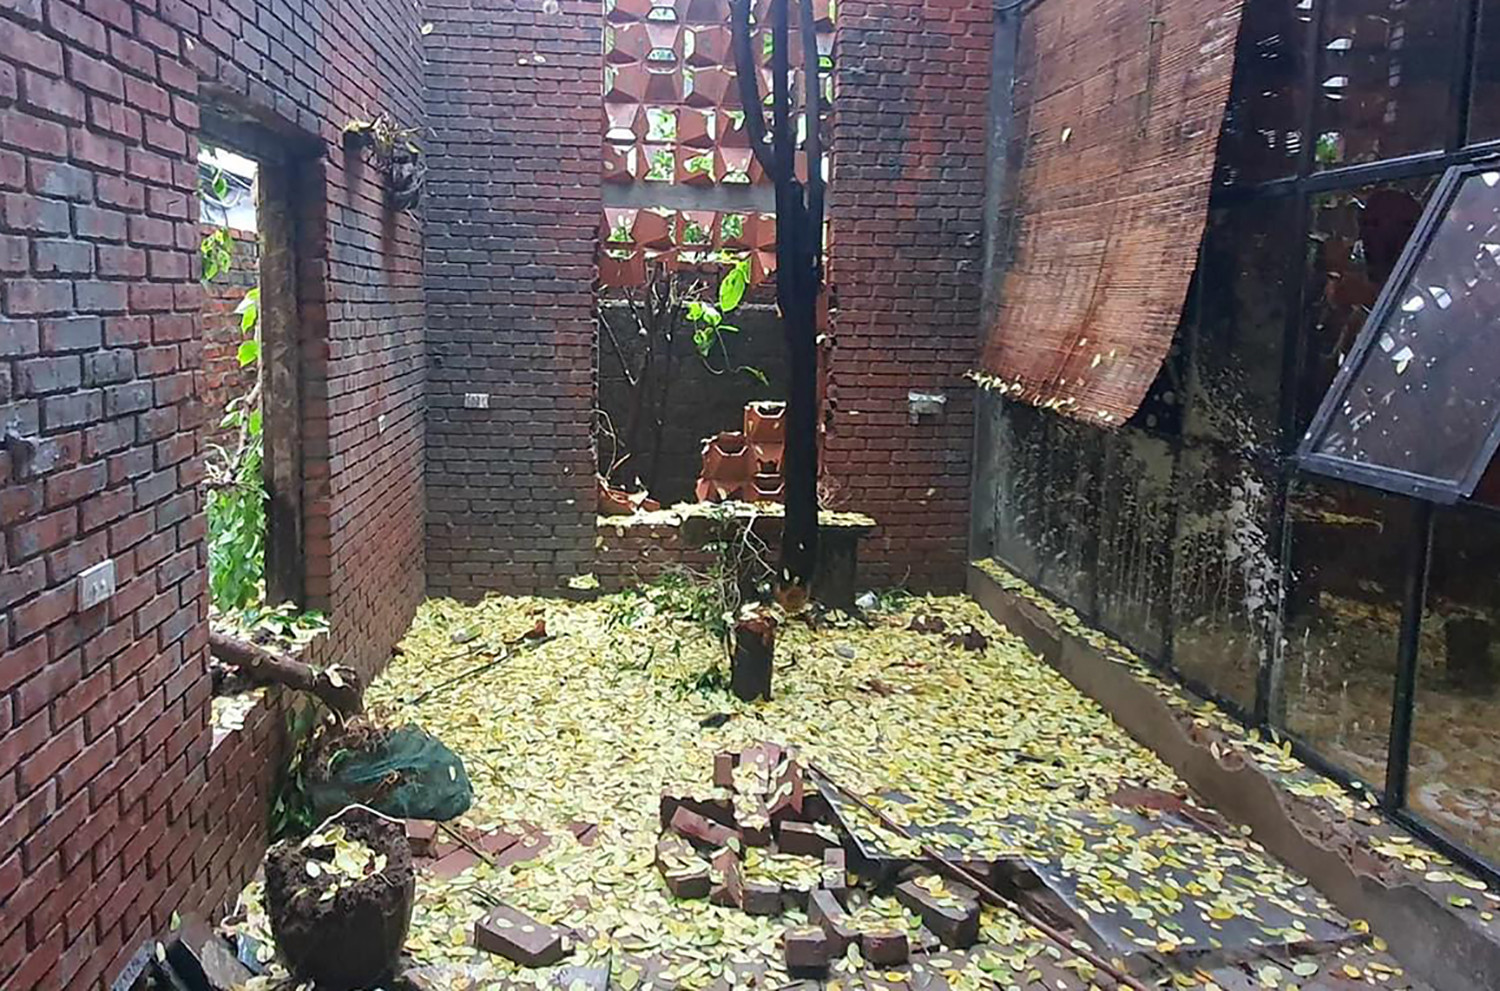 Tiệm cà phê ở Nghệ An bị phá tan hoang bên trong khi kết thúc hợp đồng cho thuê - Ảnh 2.